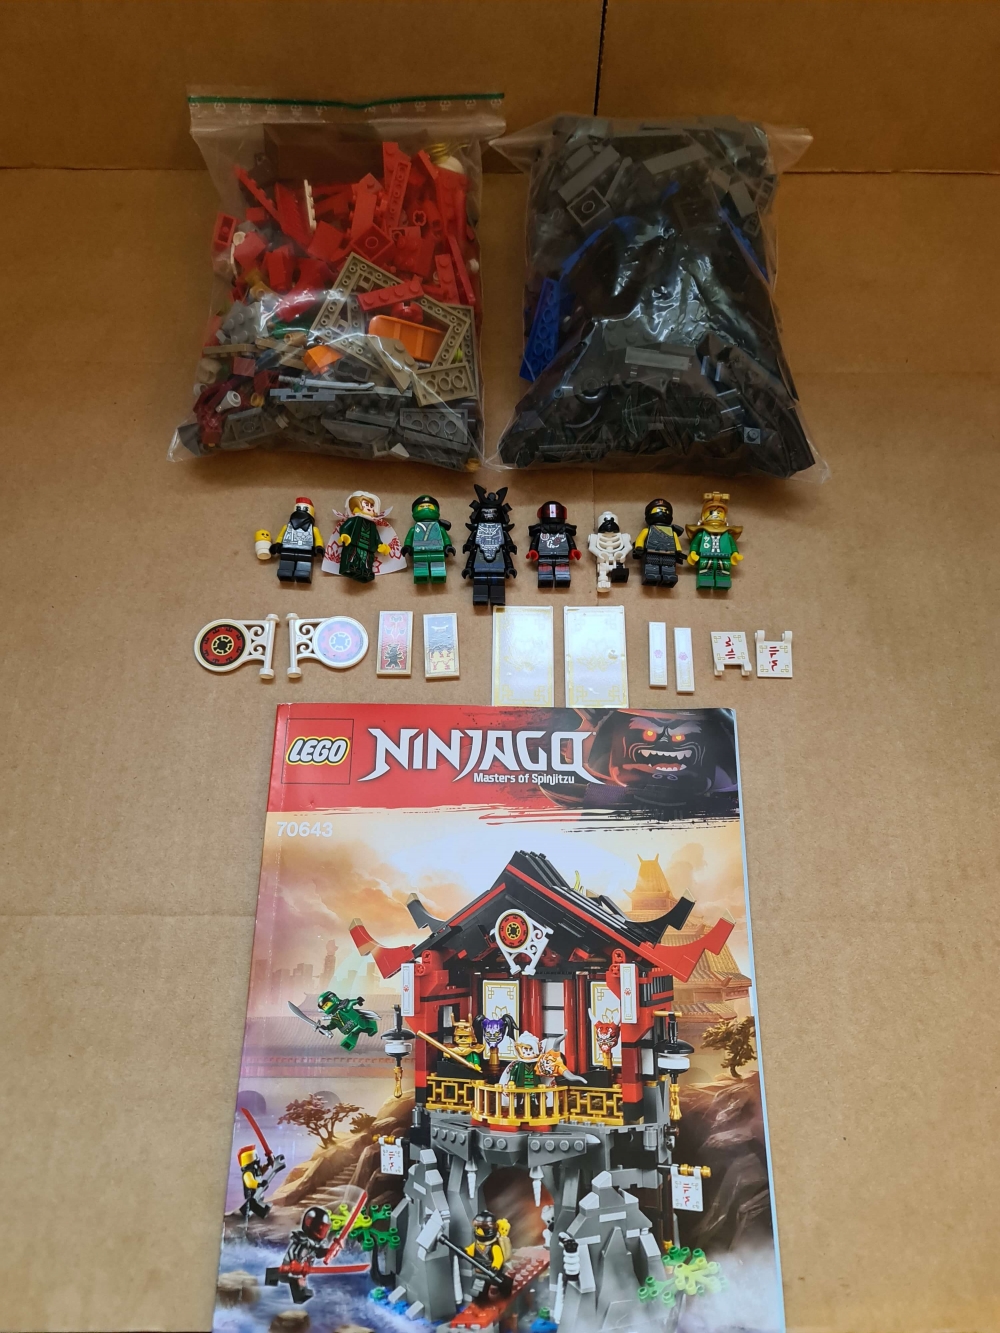 Sett 70643 fra Lego Ninjago : Sons of Garmadon serien.
Meget pent. Som nytt.
Komplett med manual.